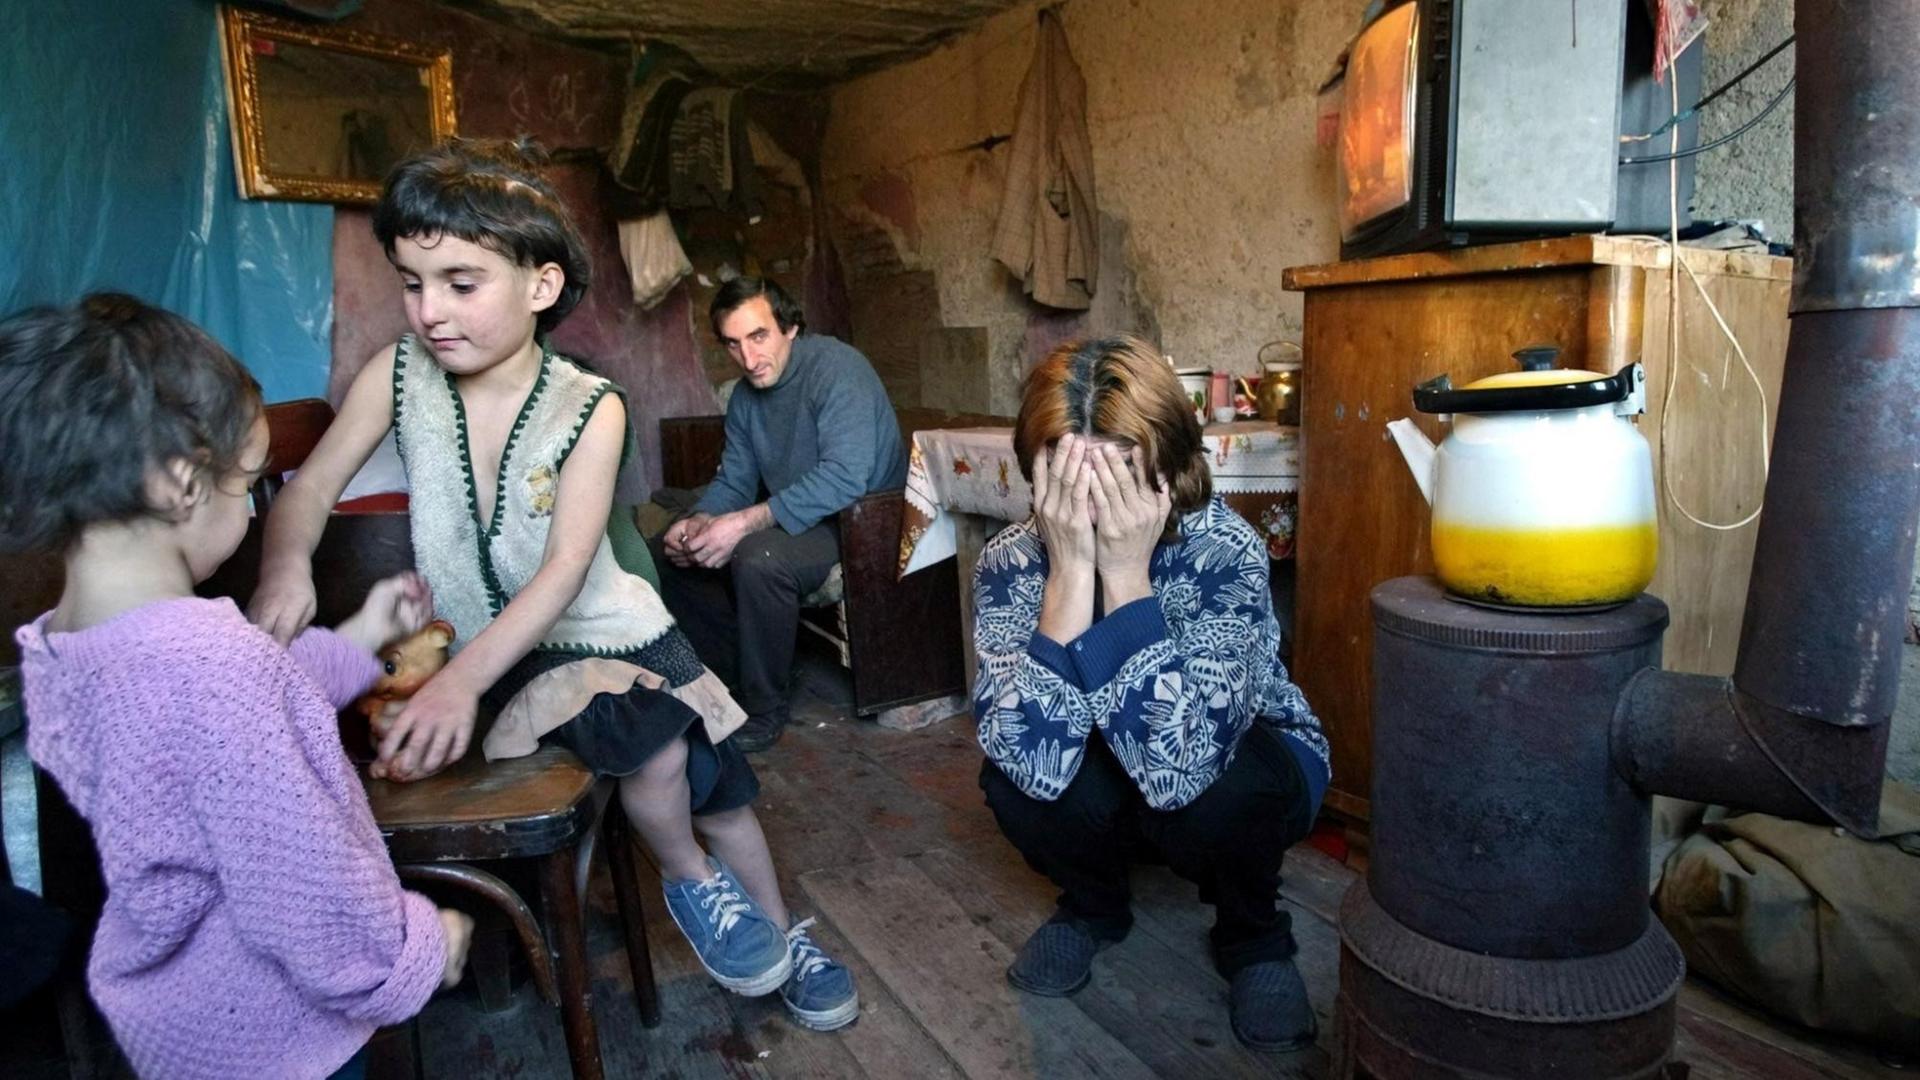 Eine abchasische Flüchtlingsfamilie in ihrer primitiven Notunterkunft in der Altstadt von Tiflis.